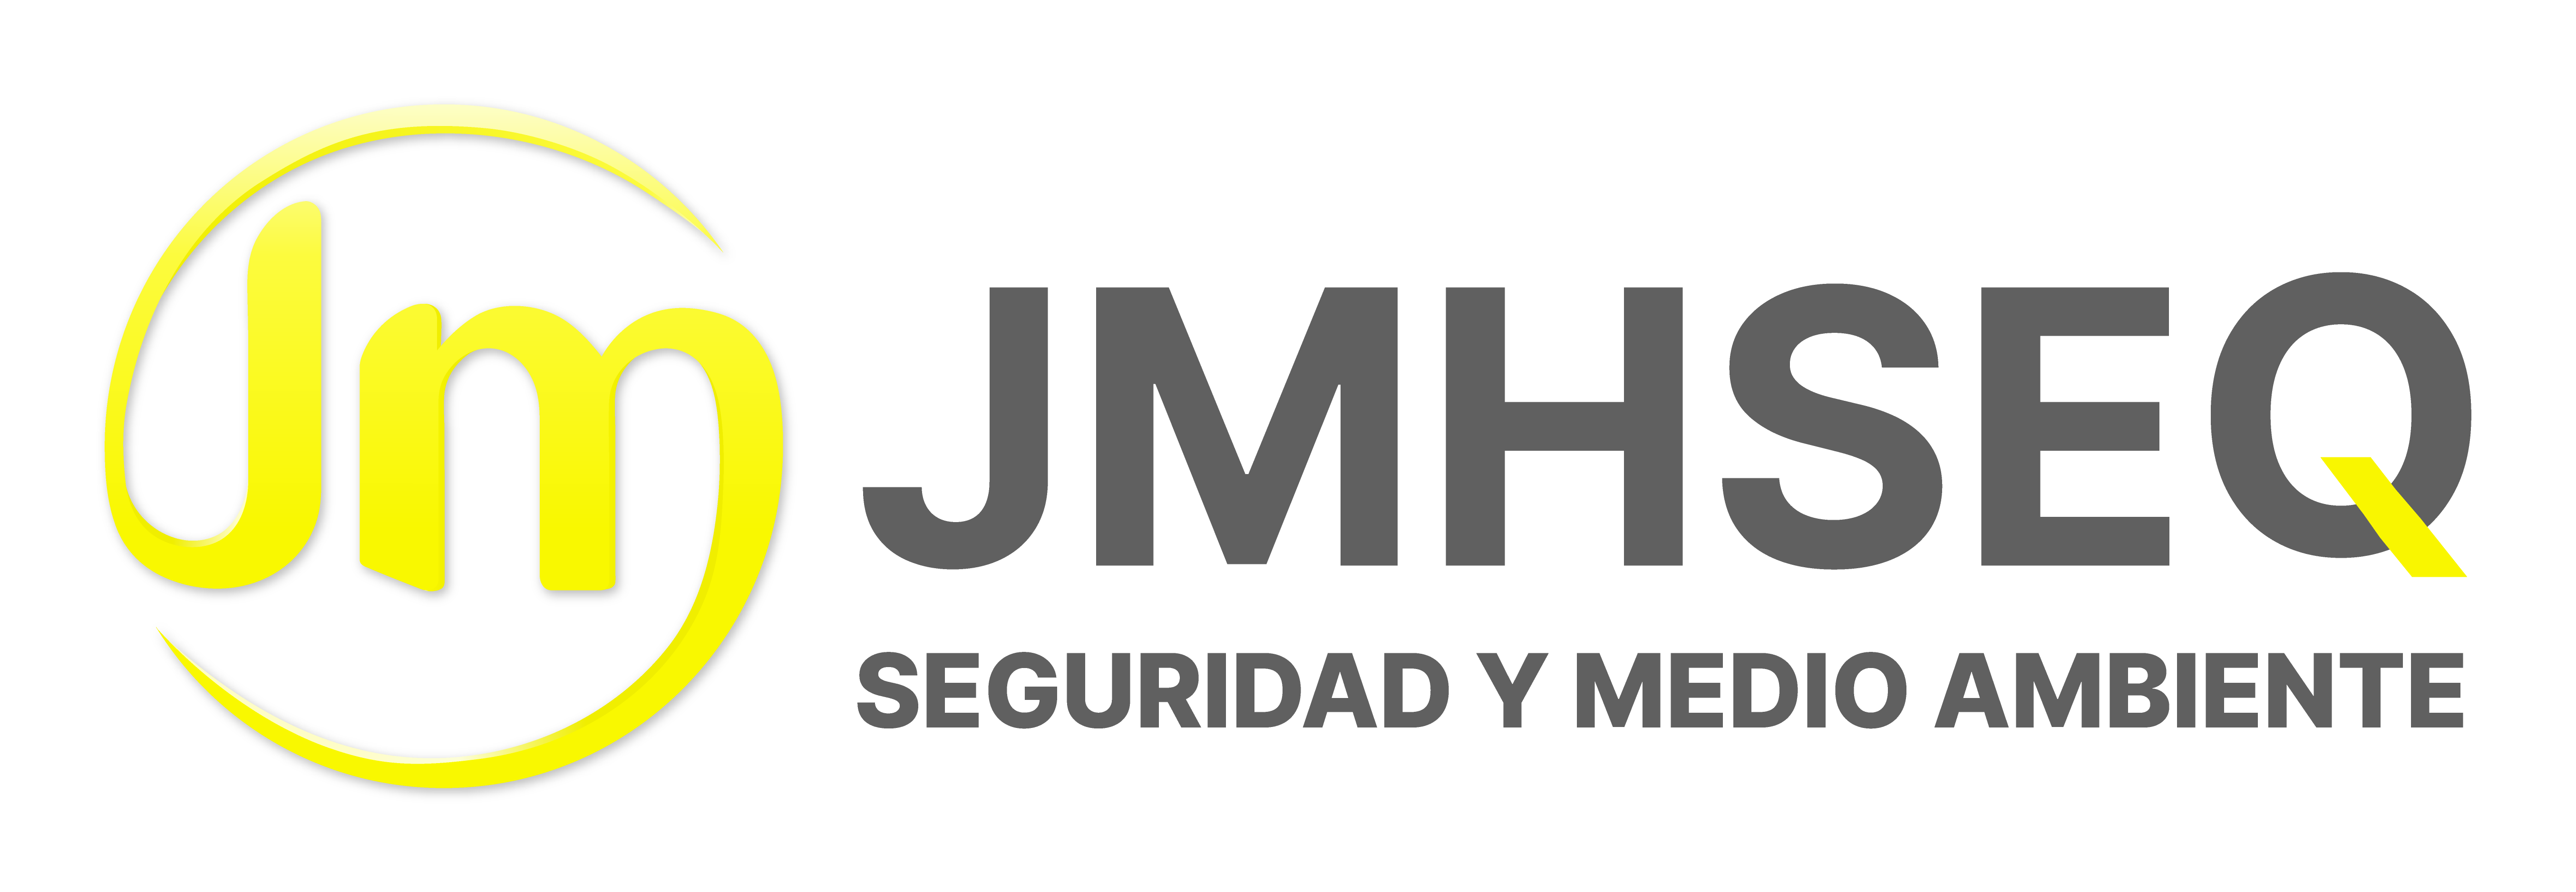 Plataforma Virtual de Aprendizaje JMHSEQ